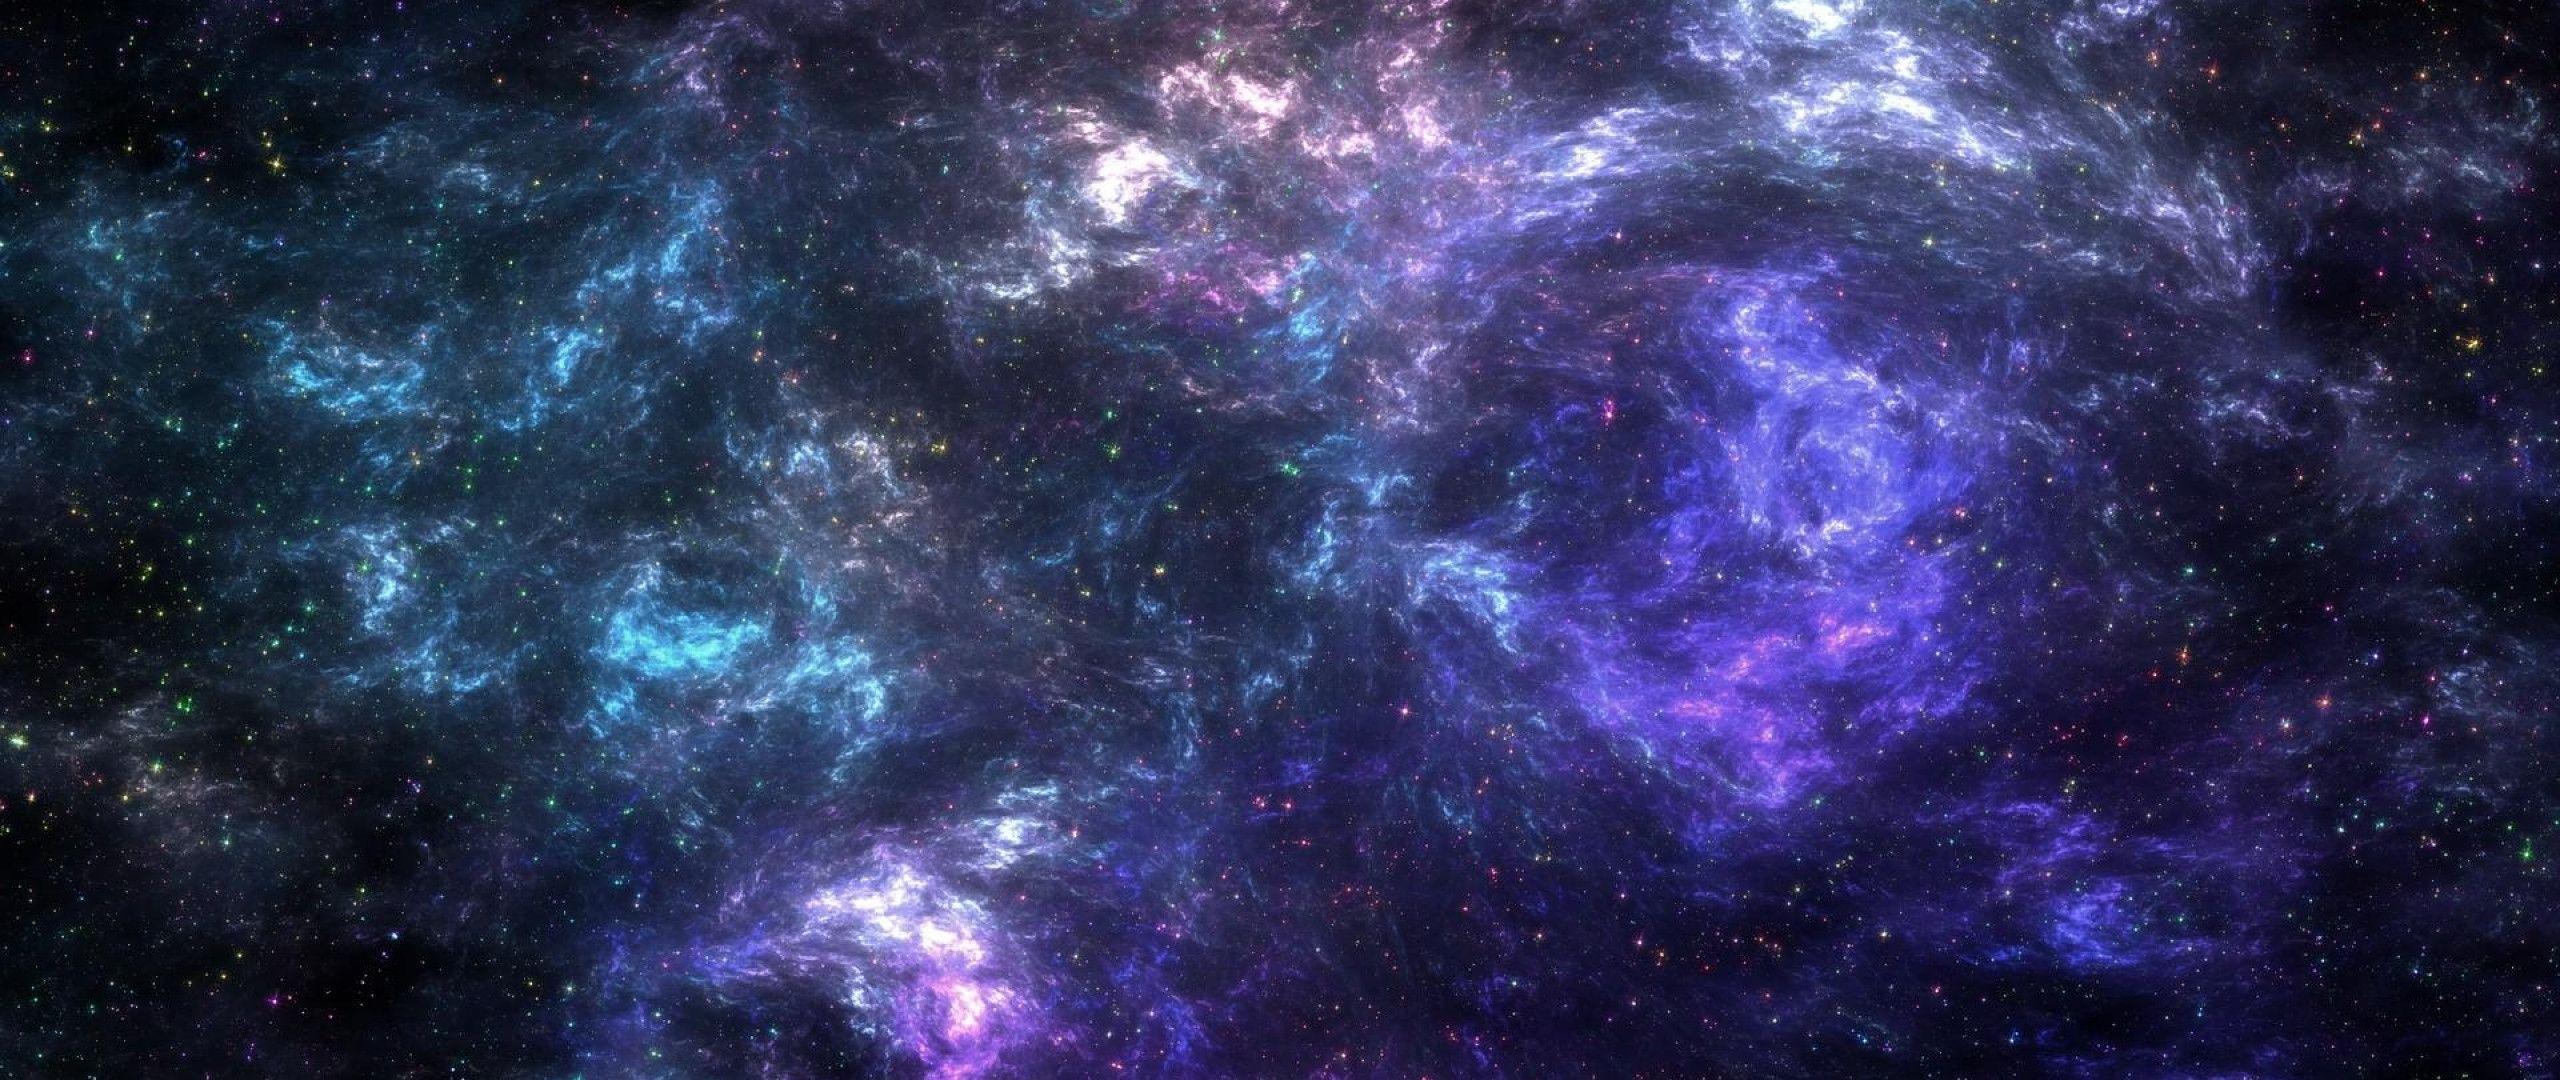 Hình nền là món quà tuyệt vời dành cho những người yêu thích vũ trụ. Với những bức ảnh thiên hà và sao đầy màu sắc, chúng tôi sẽ giúp bạn tạo nên một không gian làm việc và giải trí tuyệt vời. Hãy tải ngay các bức ảnh hình nền đẹp nhất tại đây!